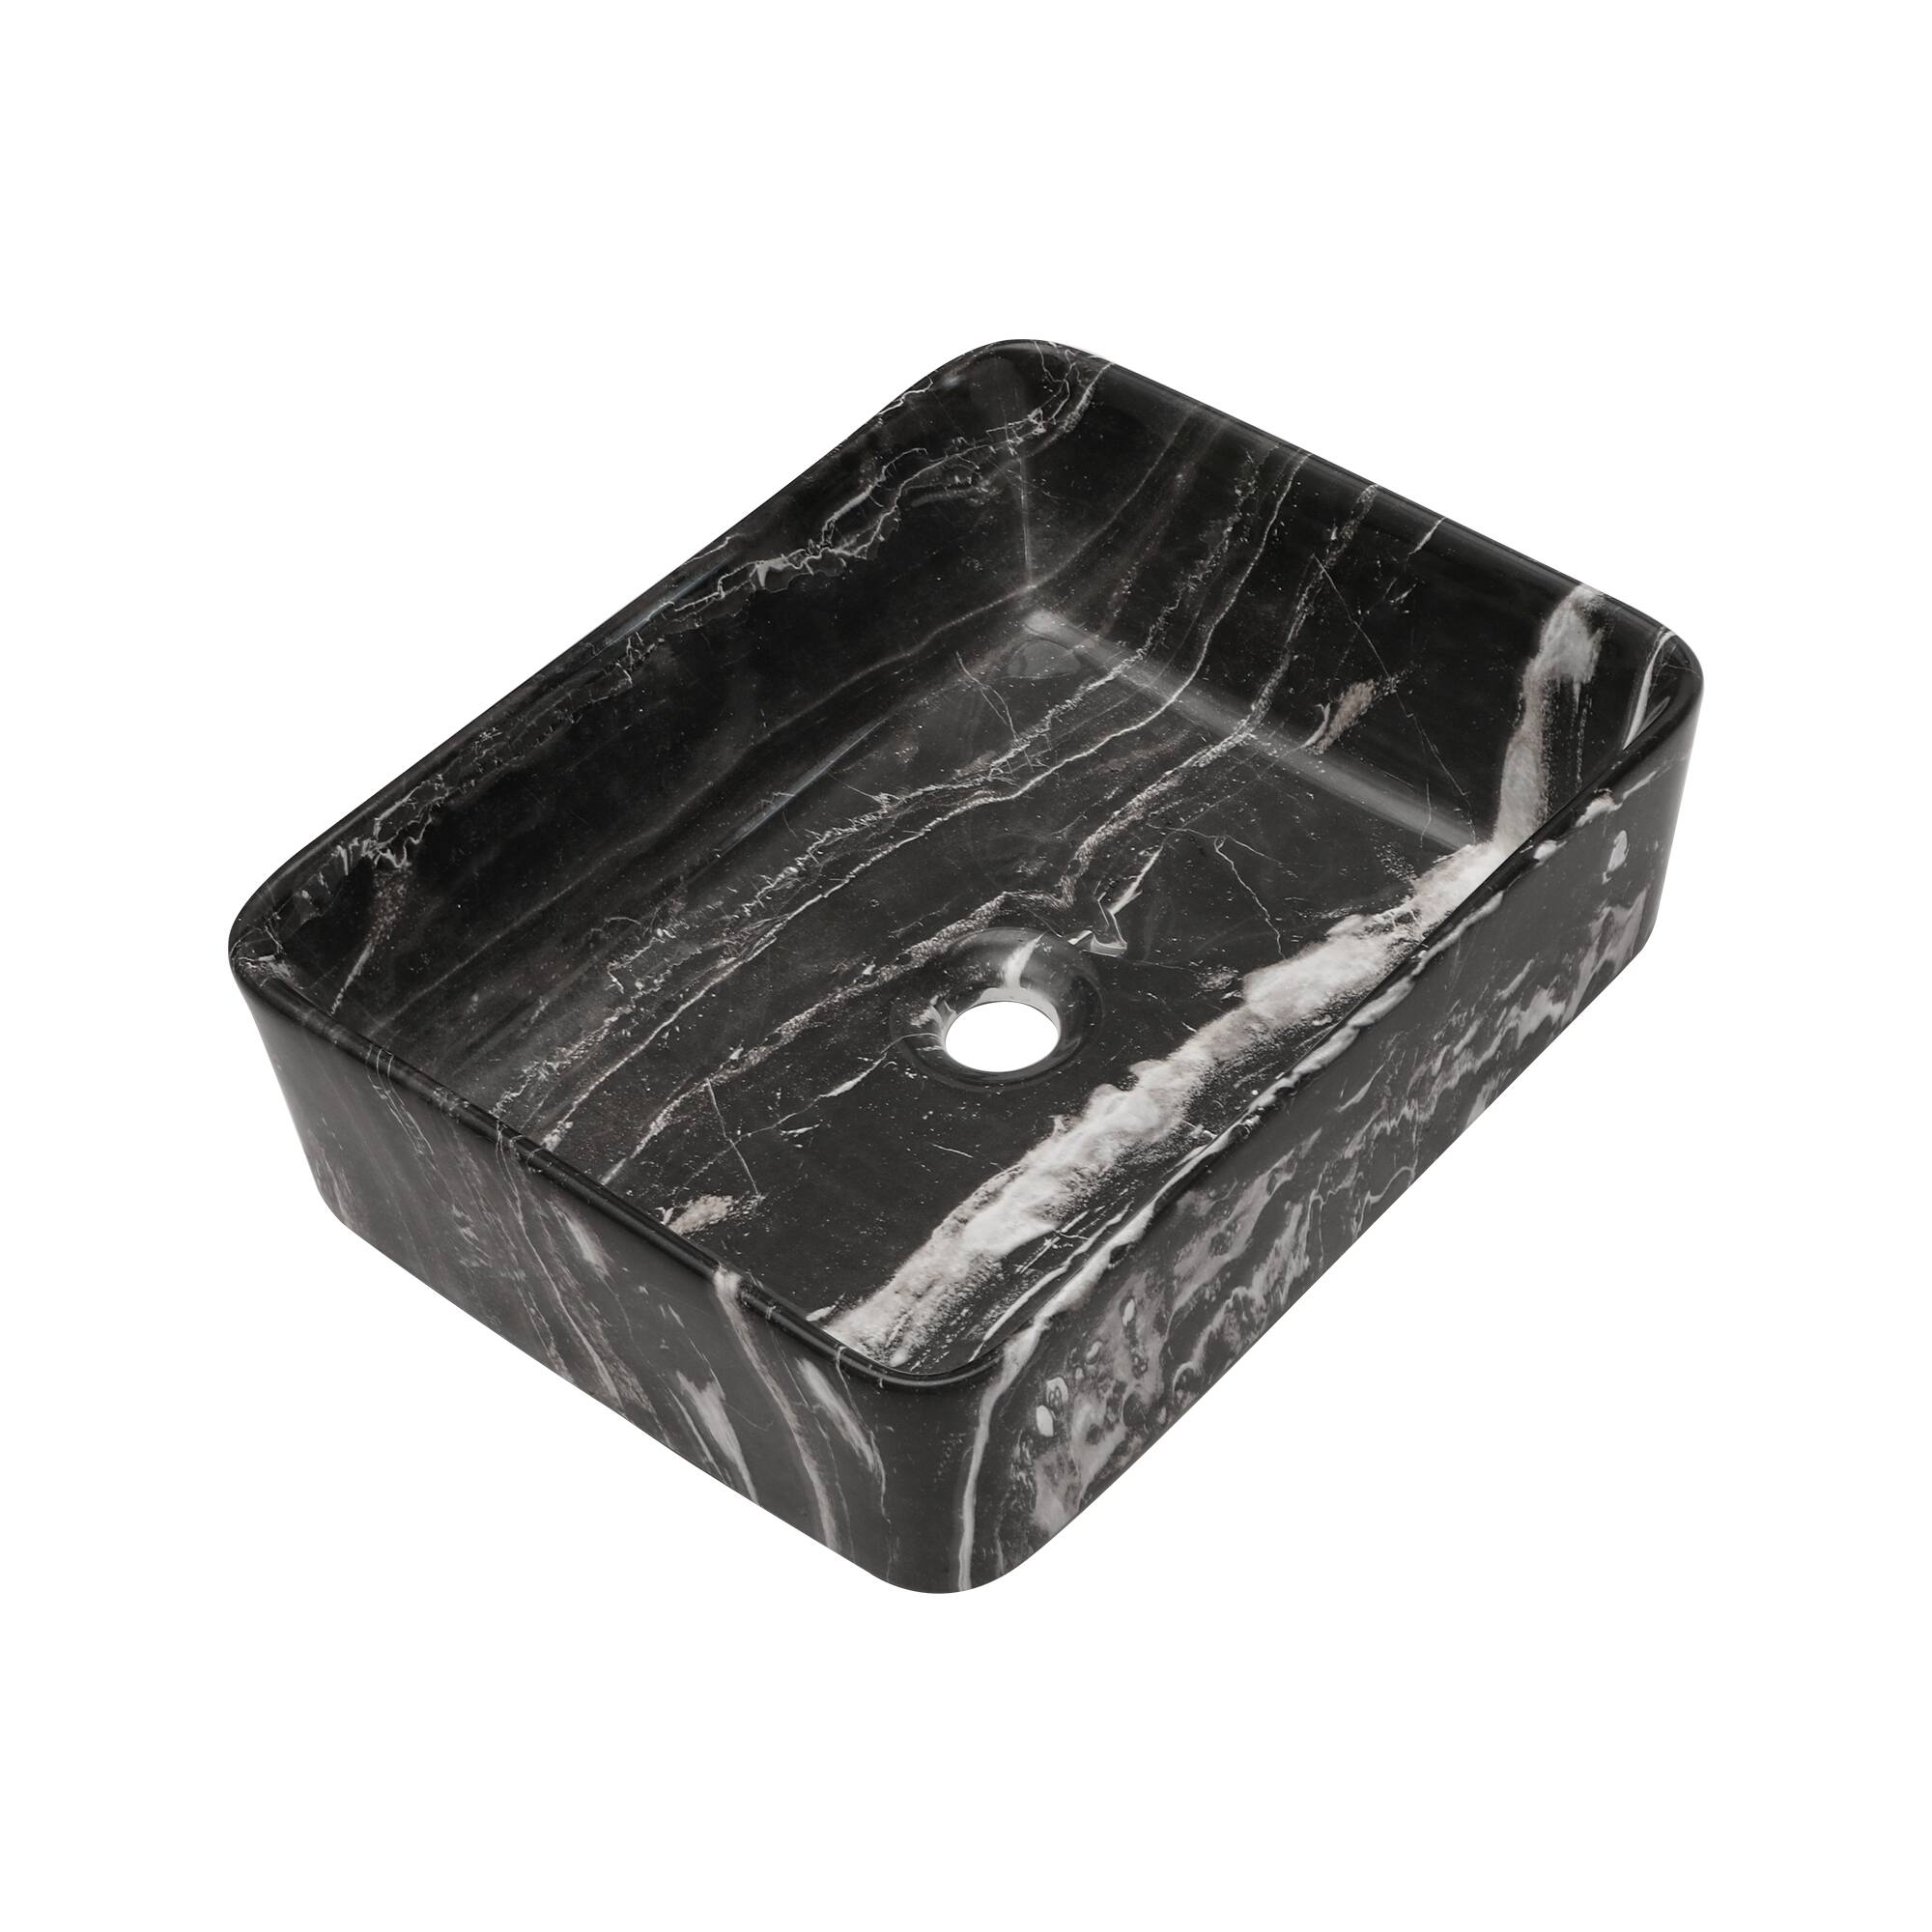 Kichae 19 Inch Marble-Look Ceramic Bathroom Vessel Sink - On Sale - Bed ...